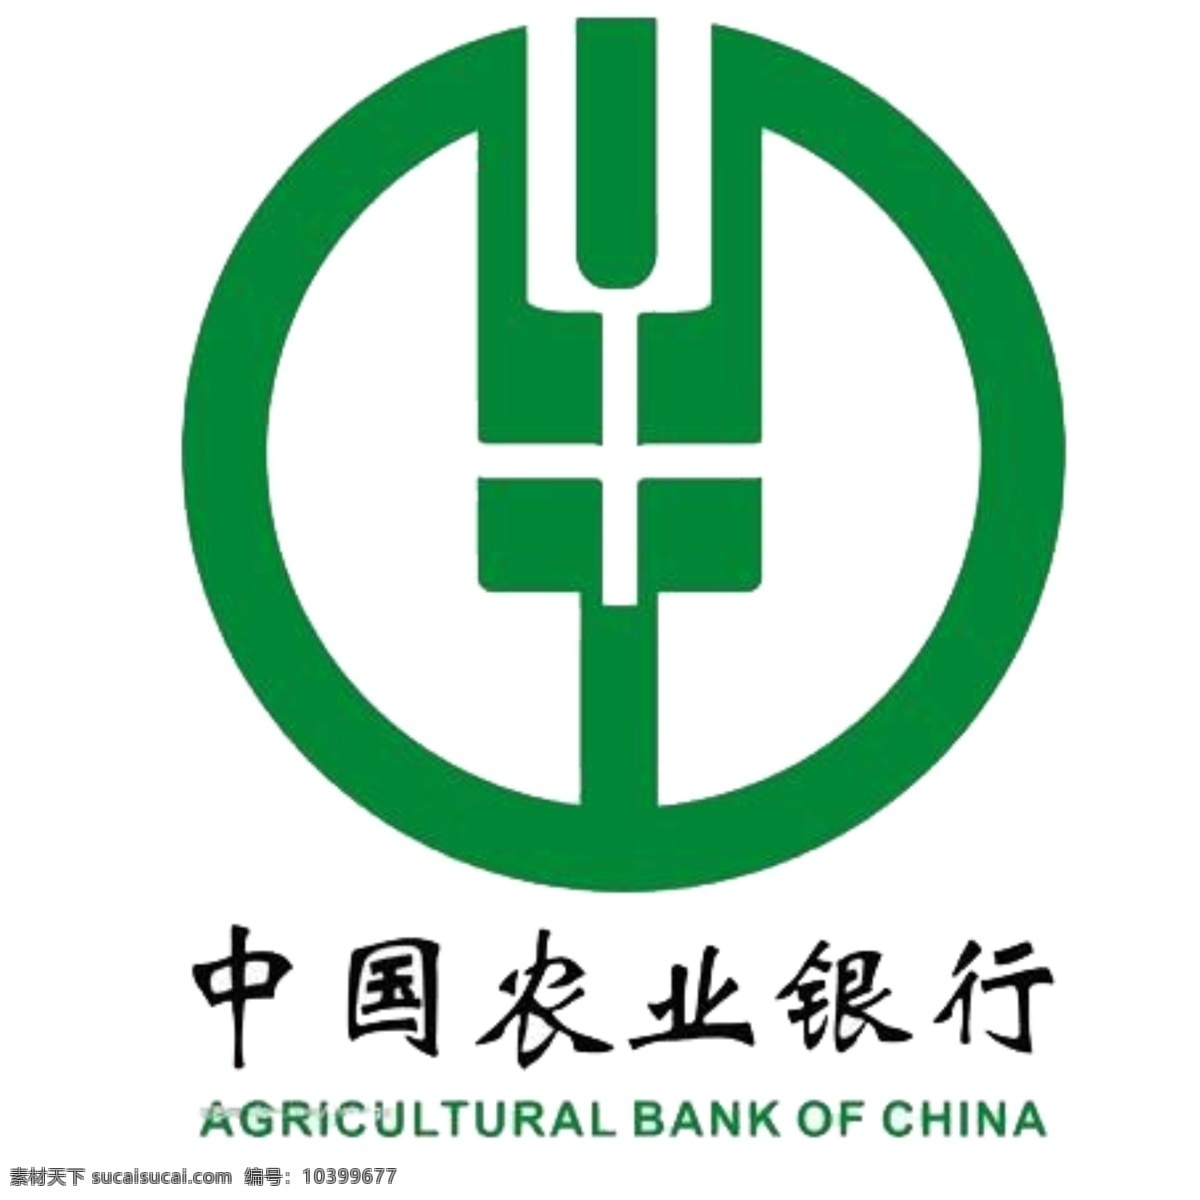 中国农业银行 标志 中国 农业银行 标志素材